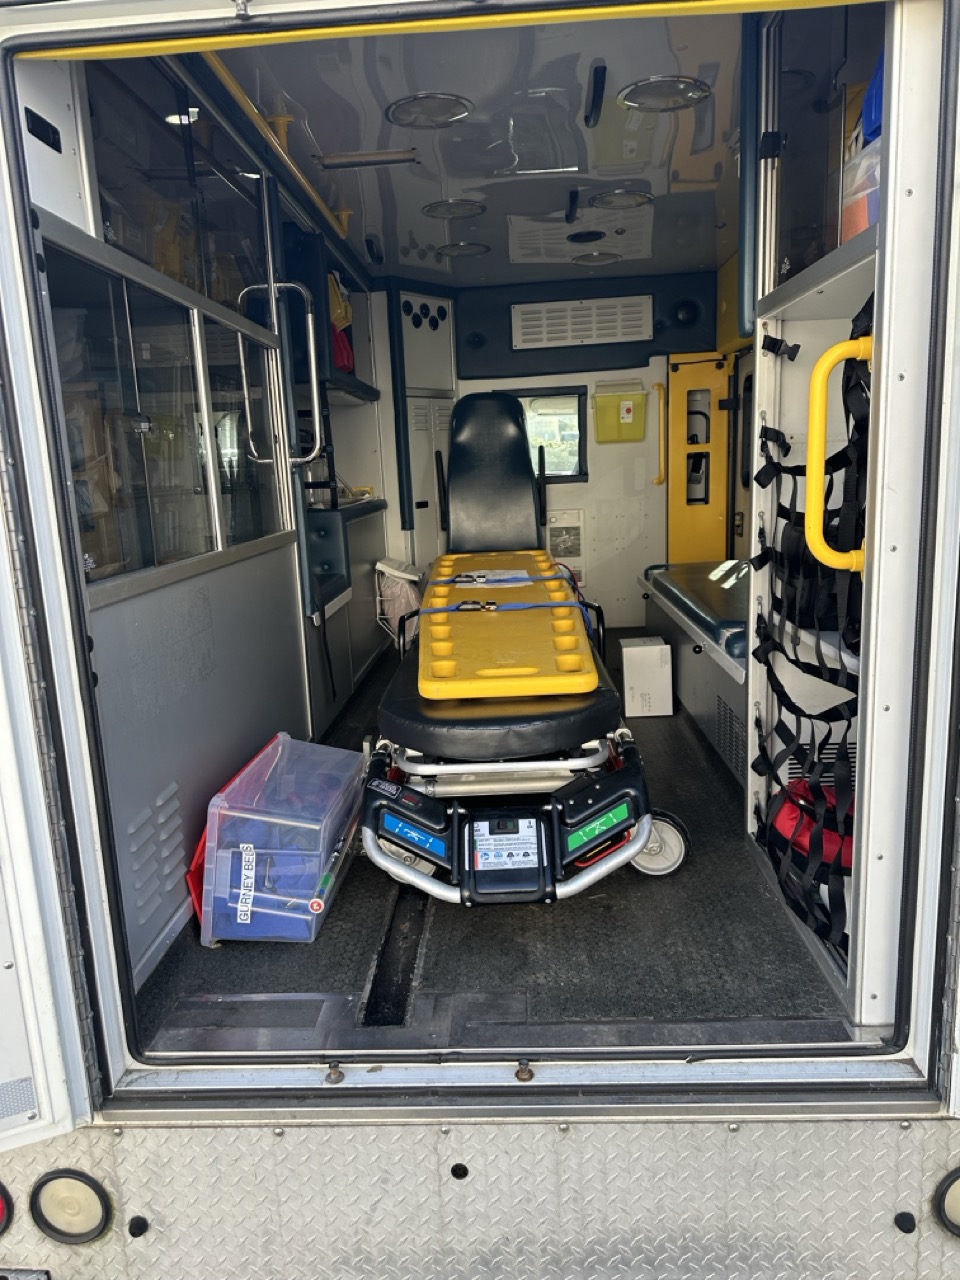 Ambulance #2